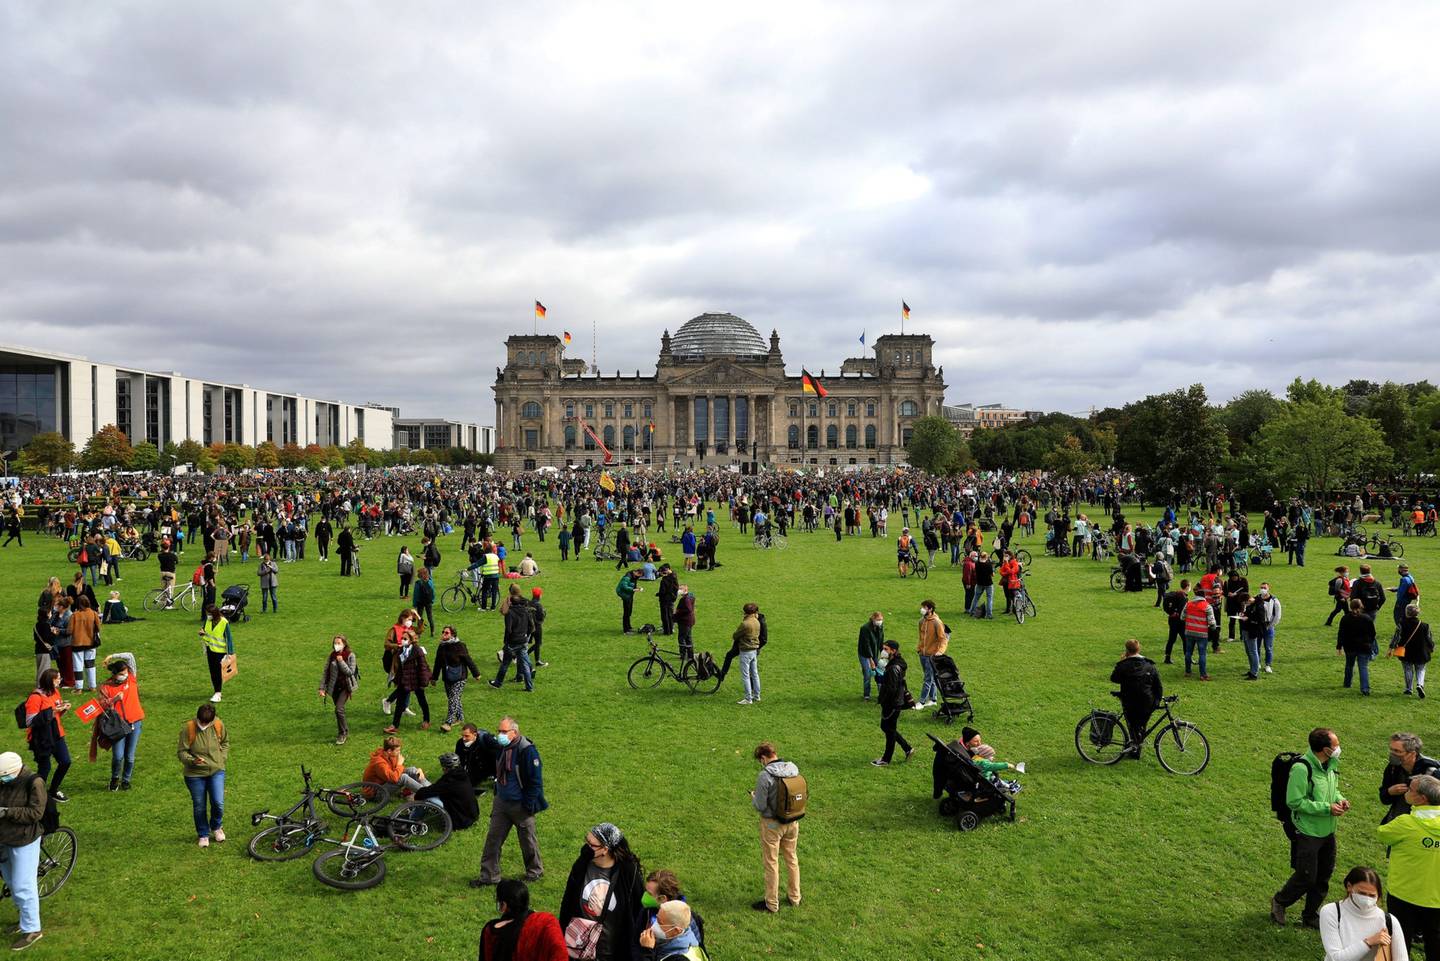 Ecologistas durante la manifestación "Fridays for Future" ("Viernes por el futuro") frente al Reichstag en Berlín, Alemania, el viernes 24 de septiembre de 2021.